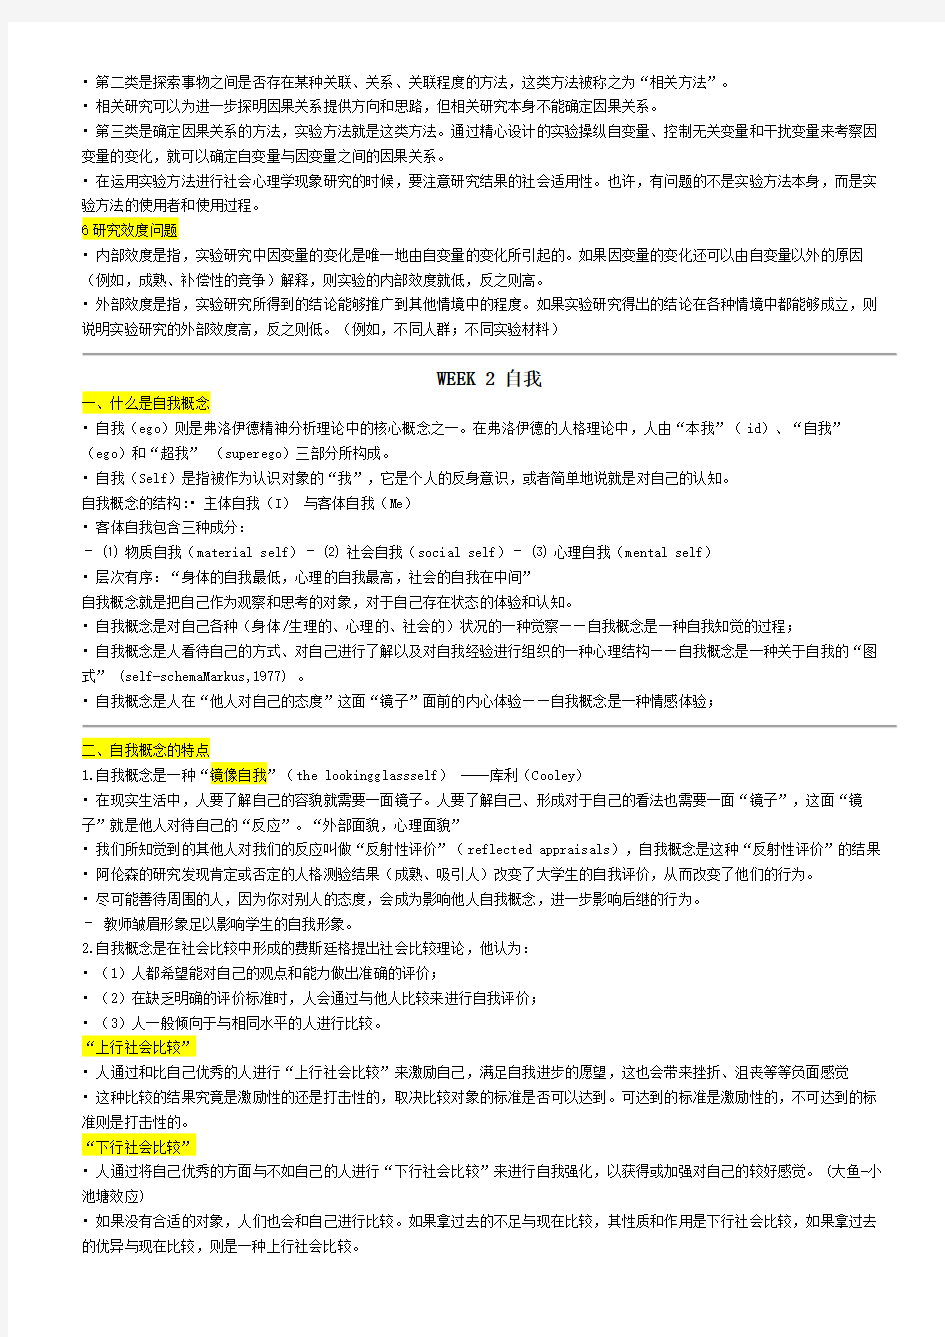 复旦,陈斌斌,心理学导论,社会心理学期末复习笔记